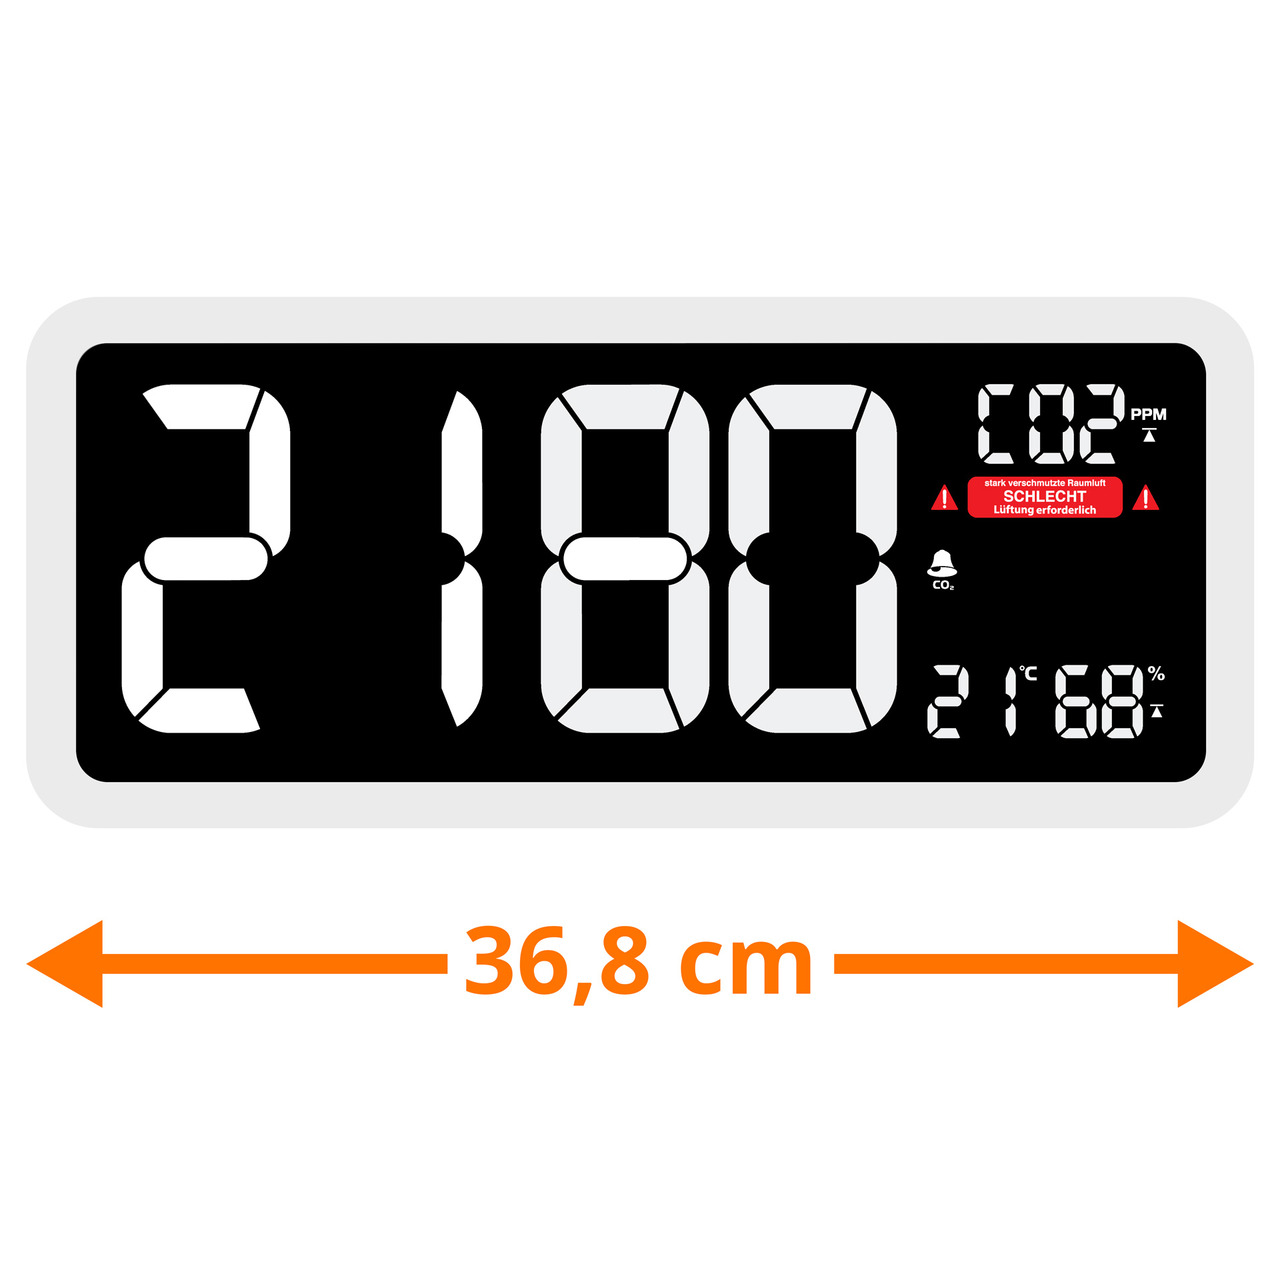 technoline CO2-Messgerät im XXL-Wanduhr-Design WL1040- Kohlendioxid- mit grafischer Ampel-Anzeige unter Klima - Wetter - Umwelt